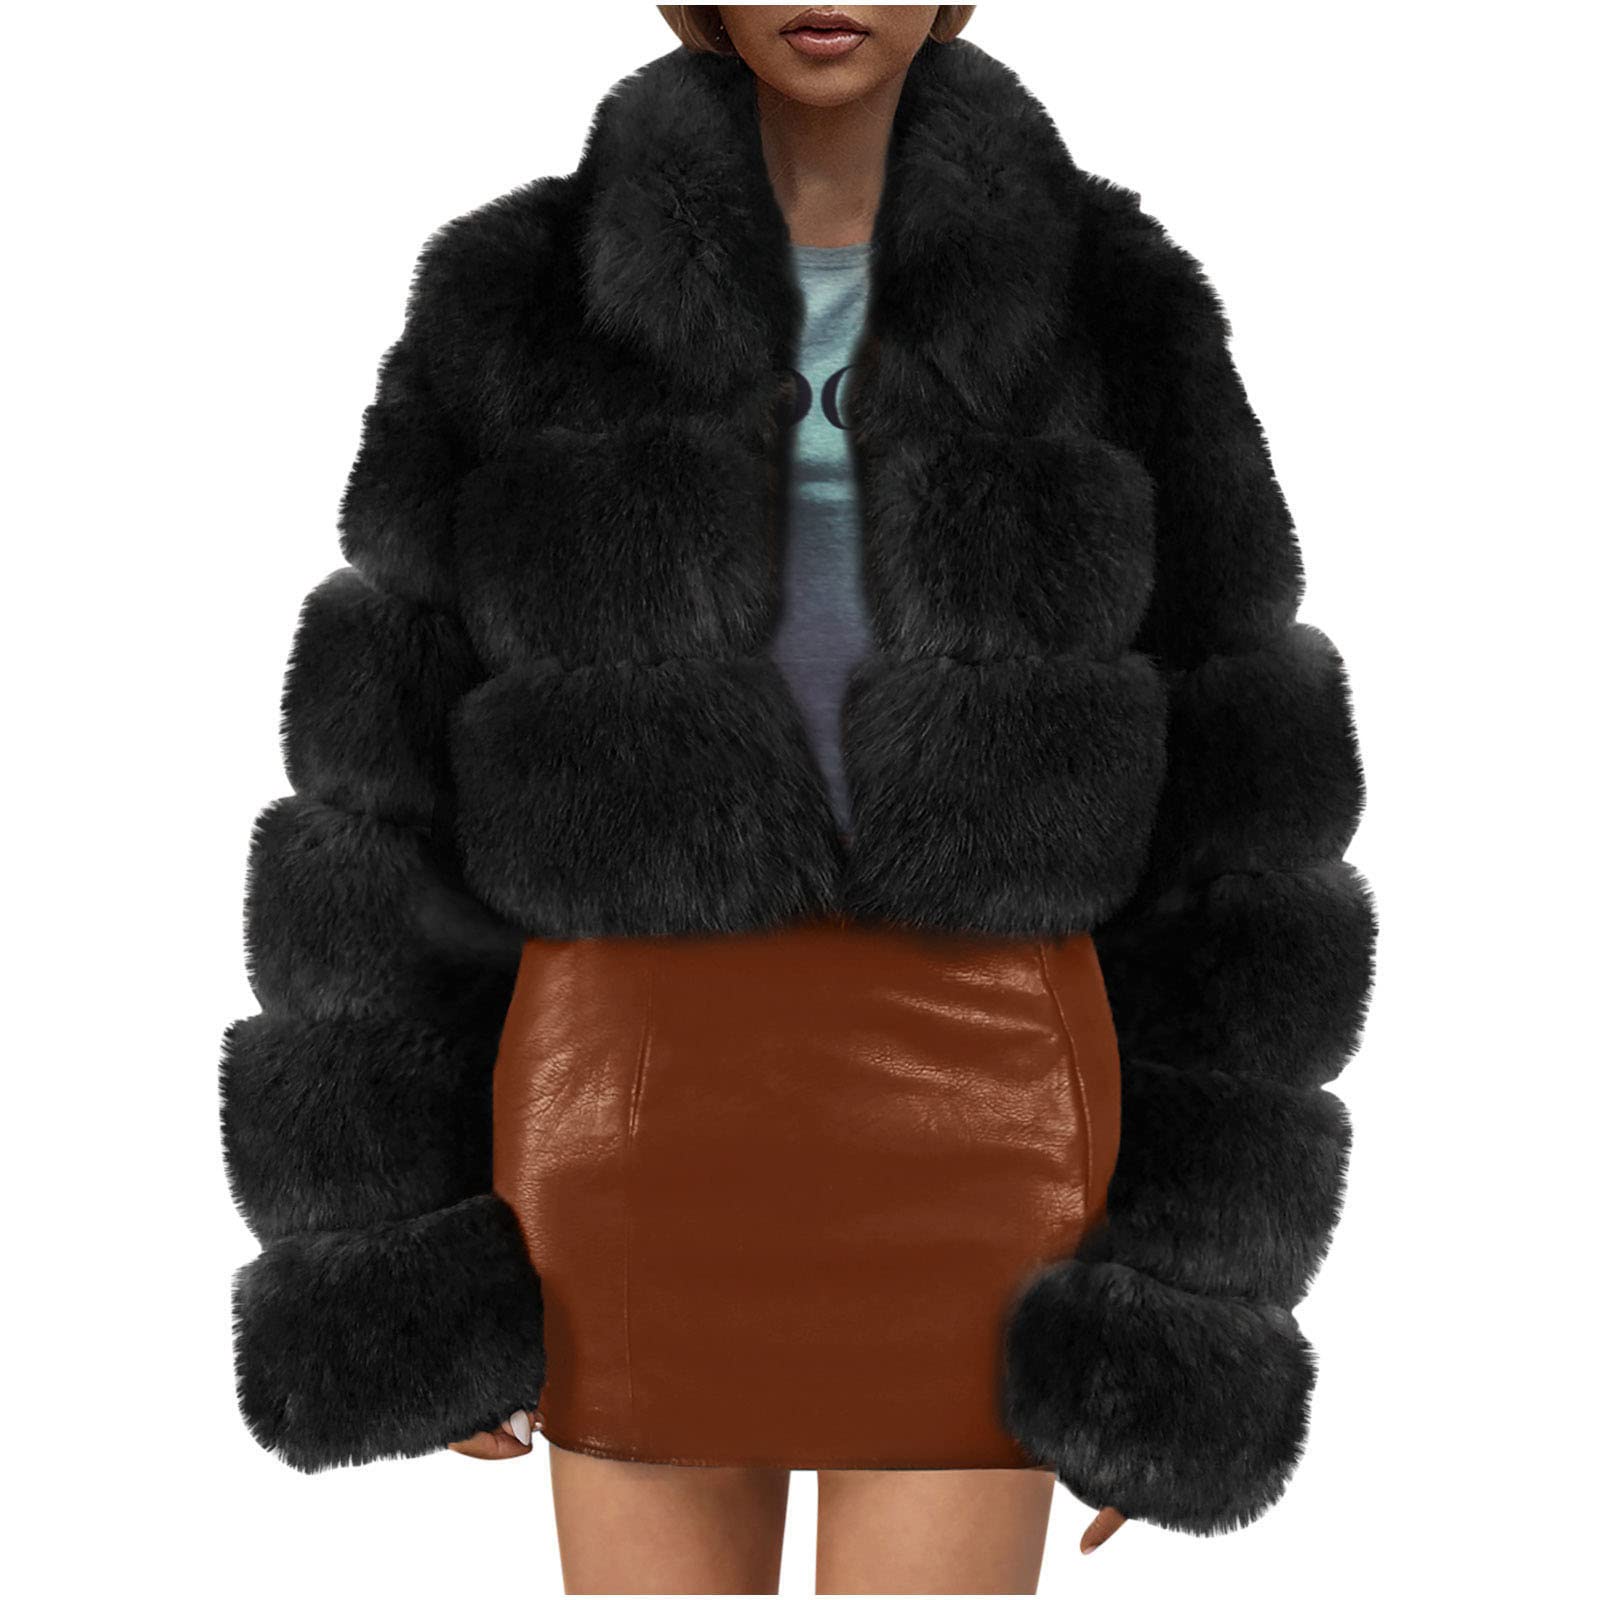 Faux Fur Coat Fleece Short Warm Jackets